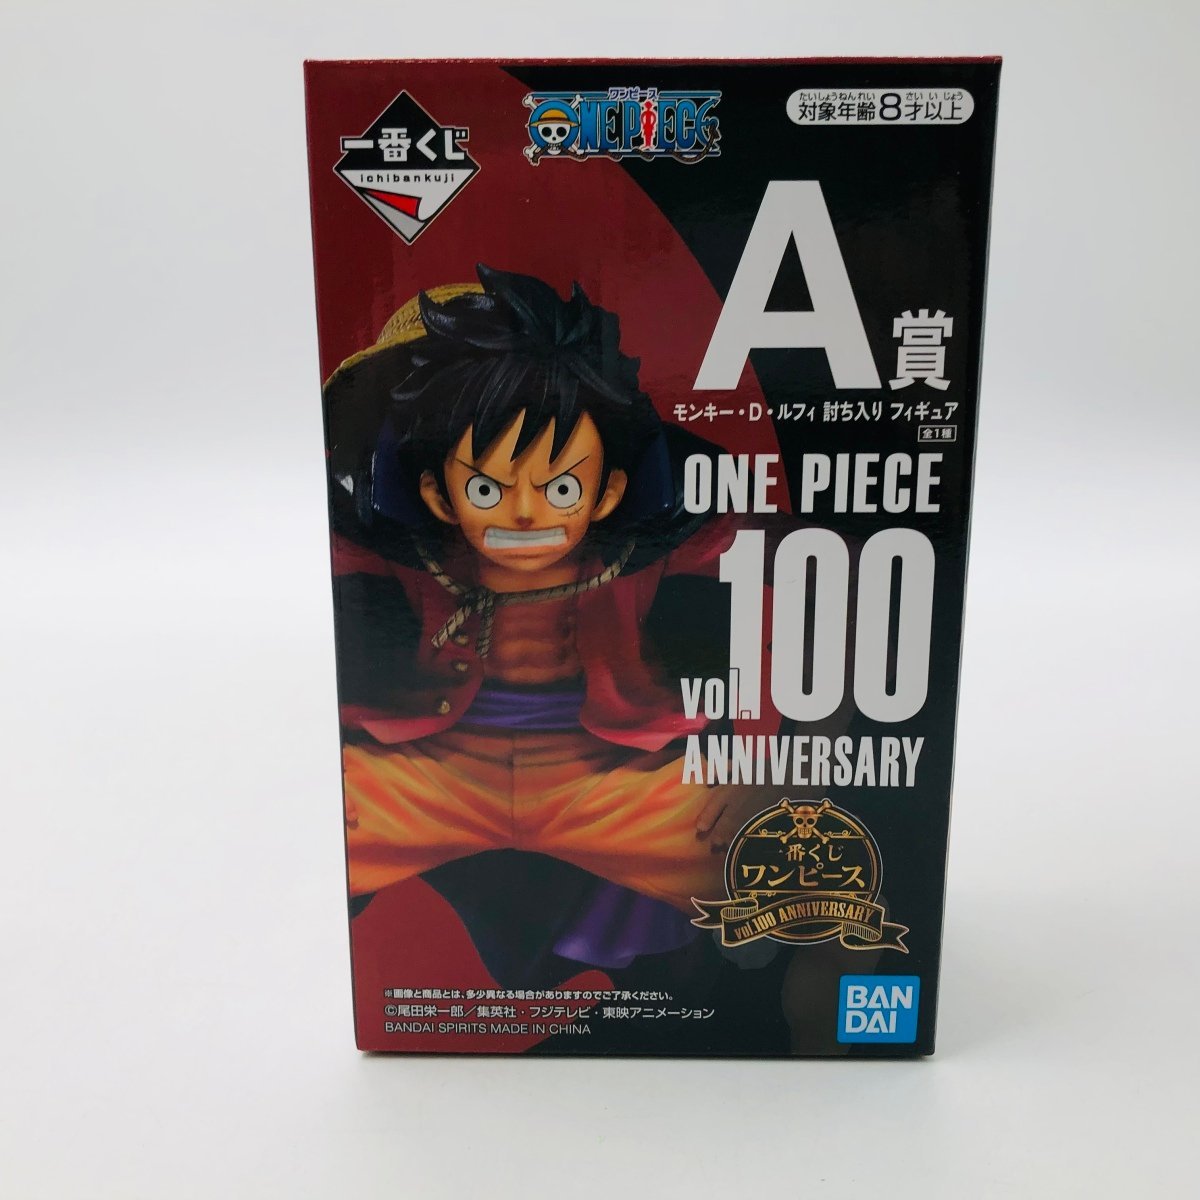 一番くじ ワンピース vol. 100 Anniversary フィギュアコンプ コミック/アニメ 激安ネット通販